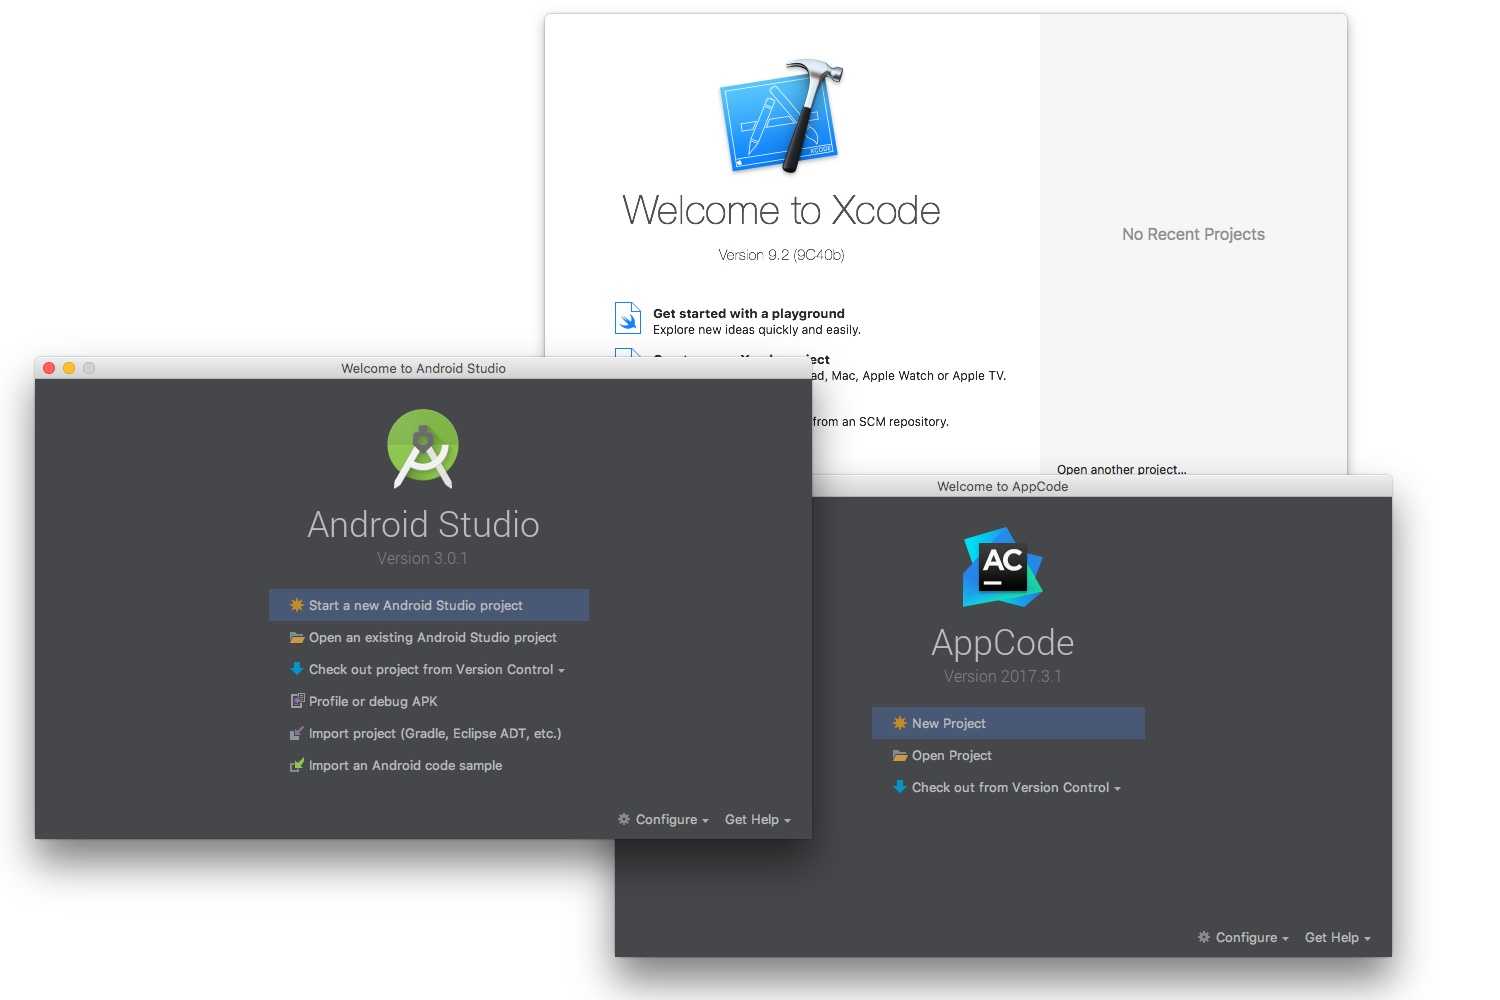 xcode vs appcode